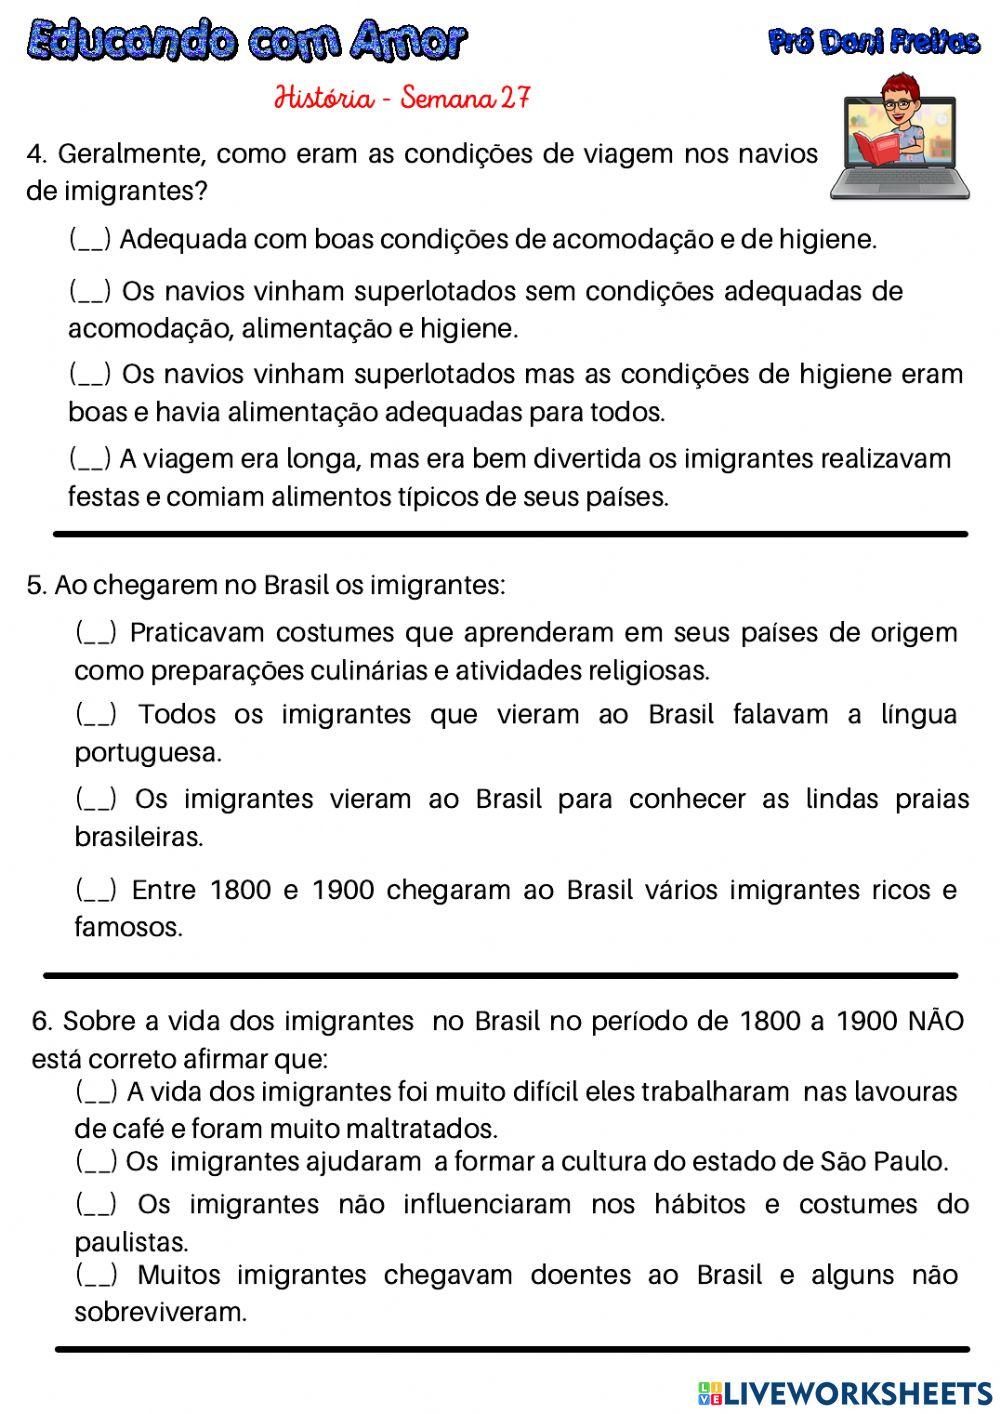 Os imigrantes na formação de São Paulo